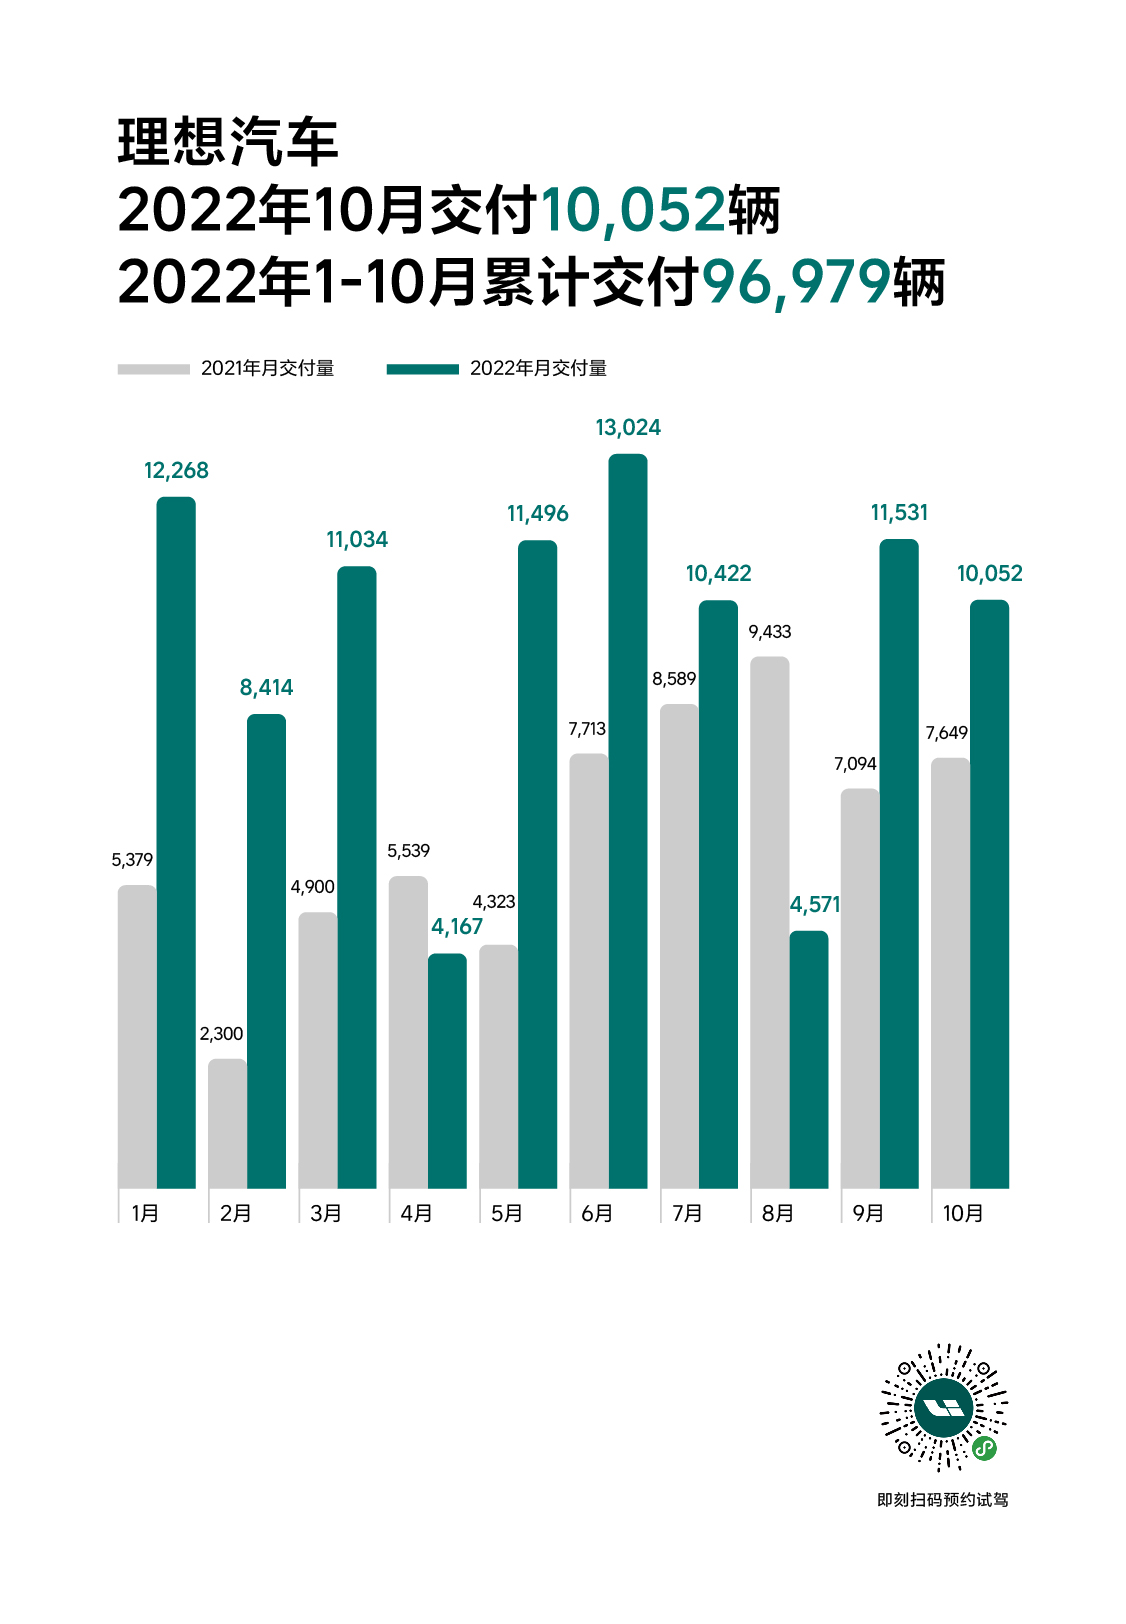 2022 10月官方发媒体销量图_1031_公关.jpg